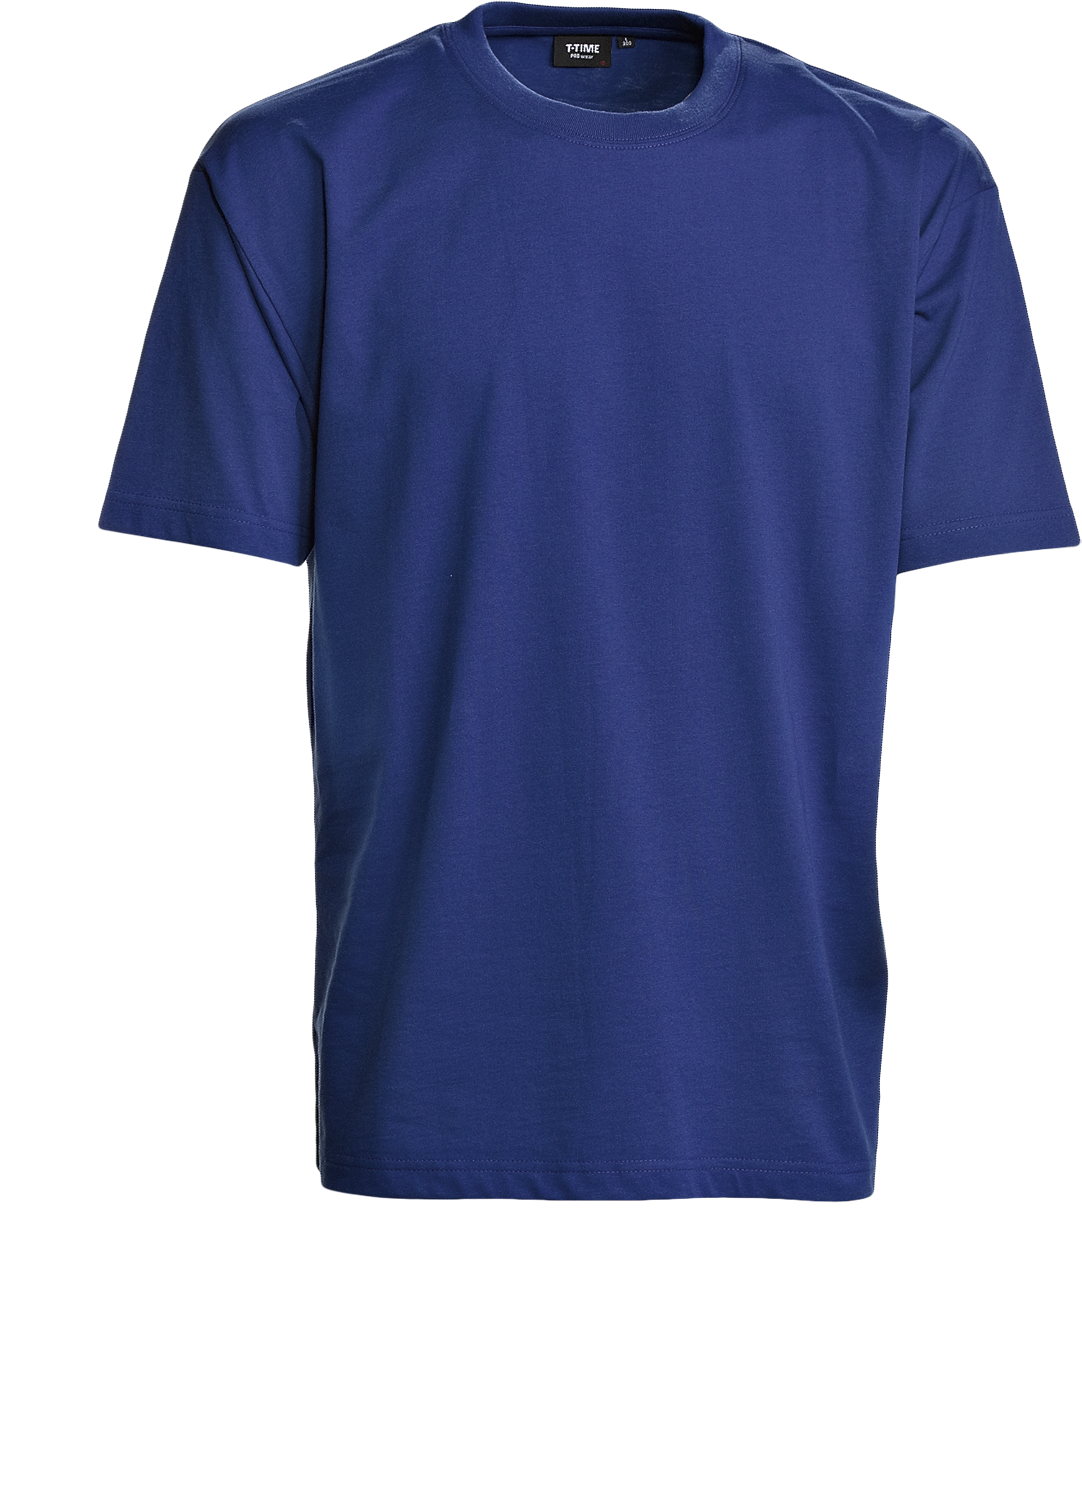 Blau Herren T-Shirt, Prowear (8150211) 